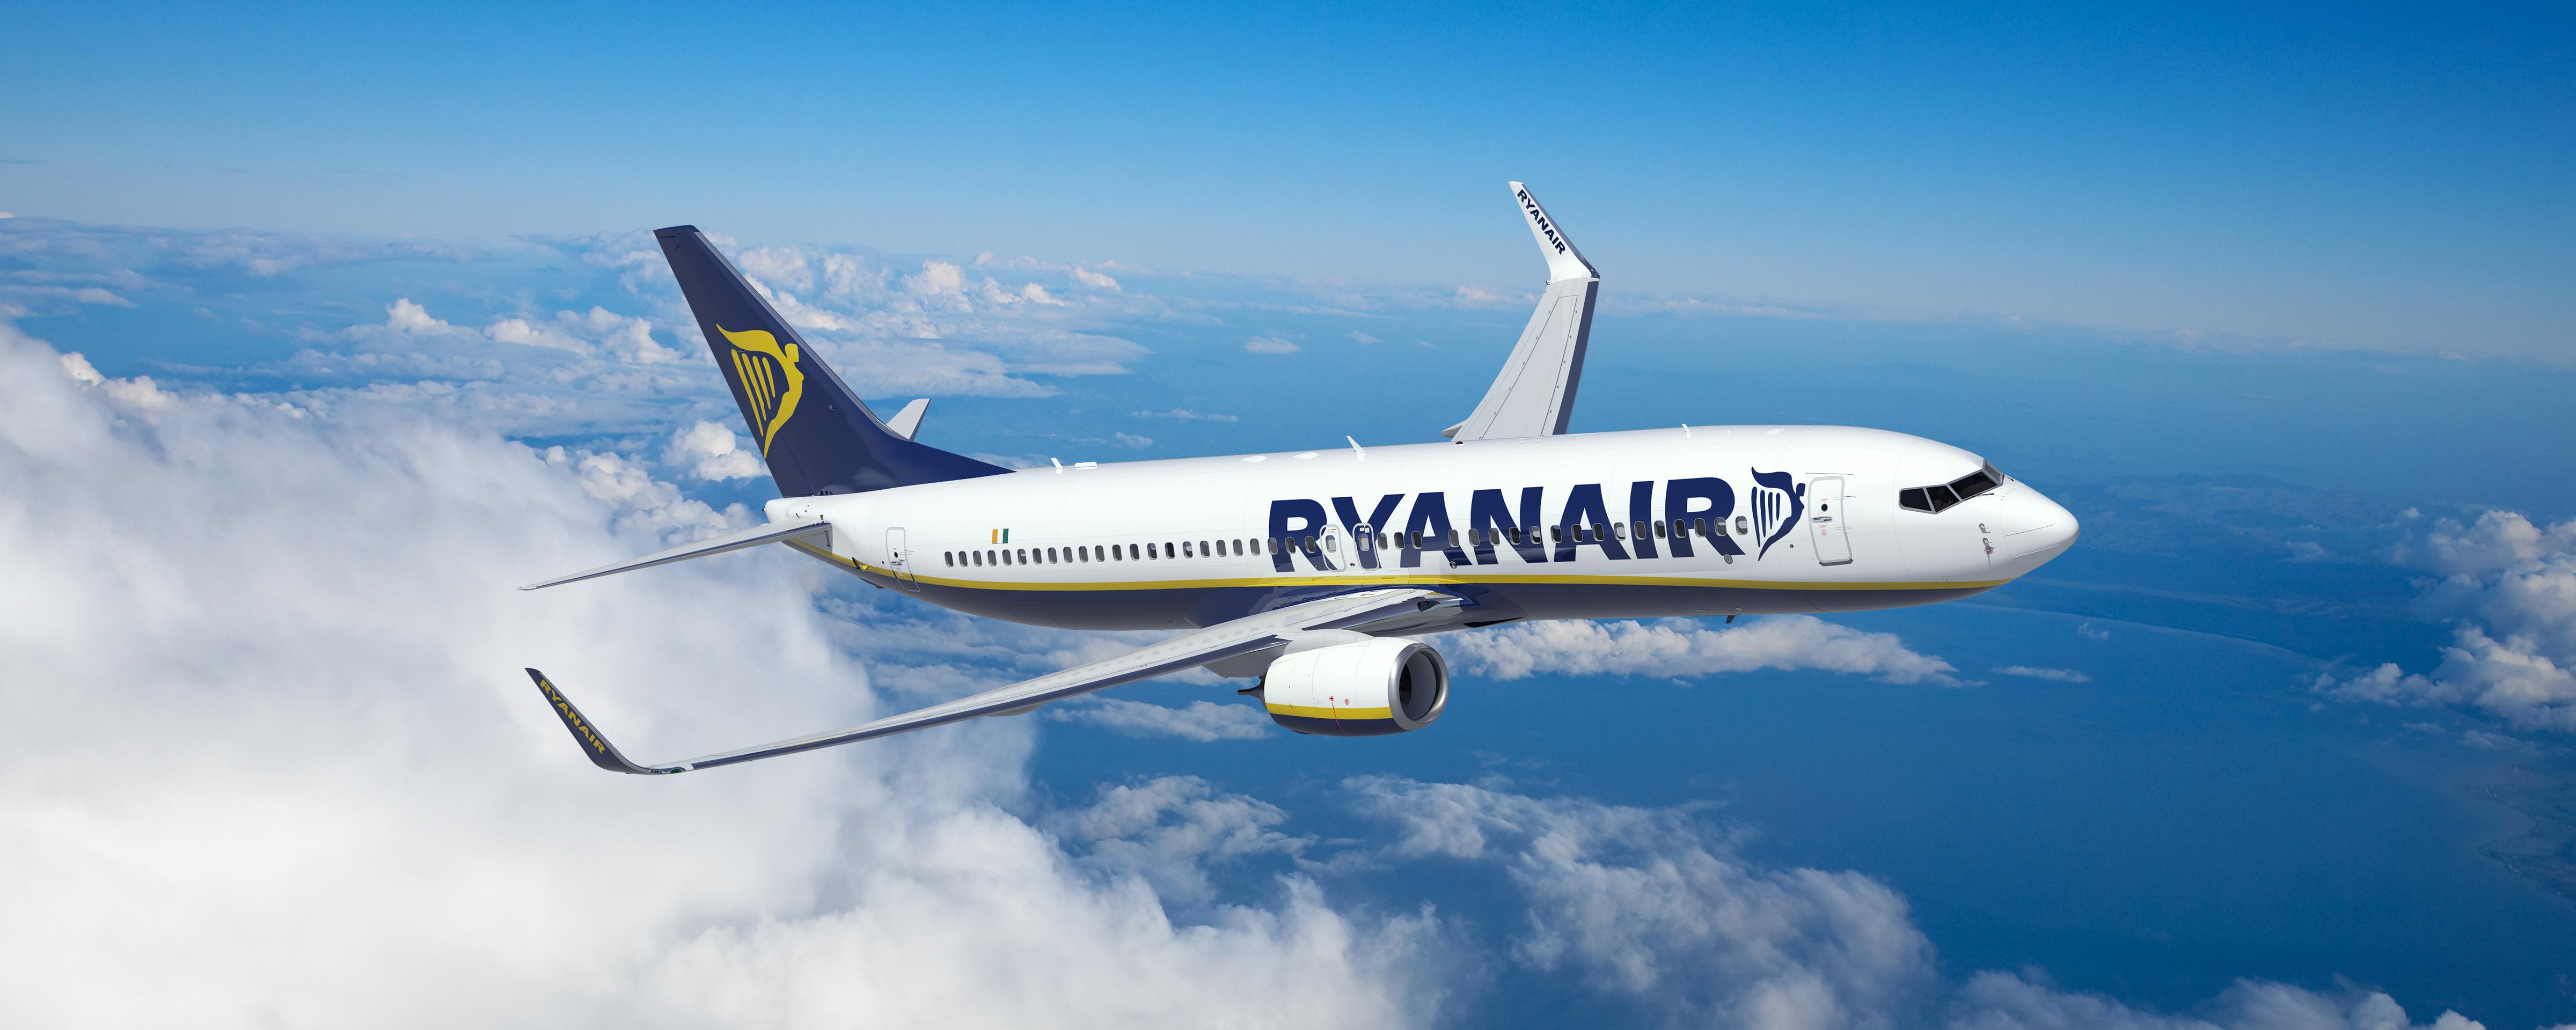 Δημοσιοποιήθηκαν οι συνομιλίες μεταξύ Λευκωρωσικών αρχών και τoυ πιλότου της Ryanair